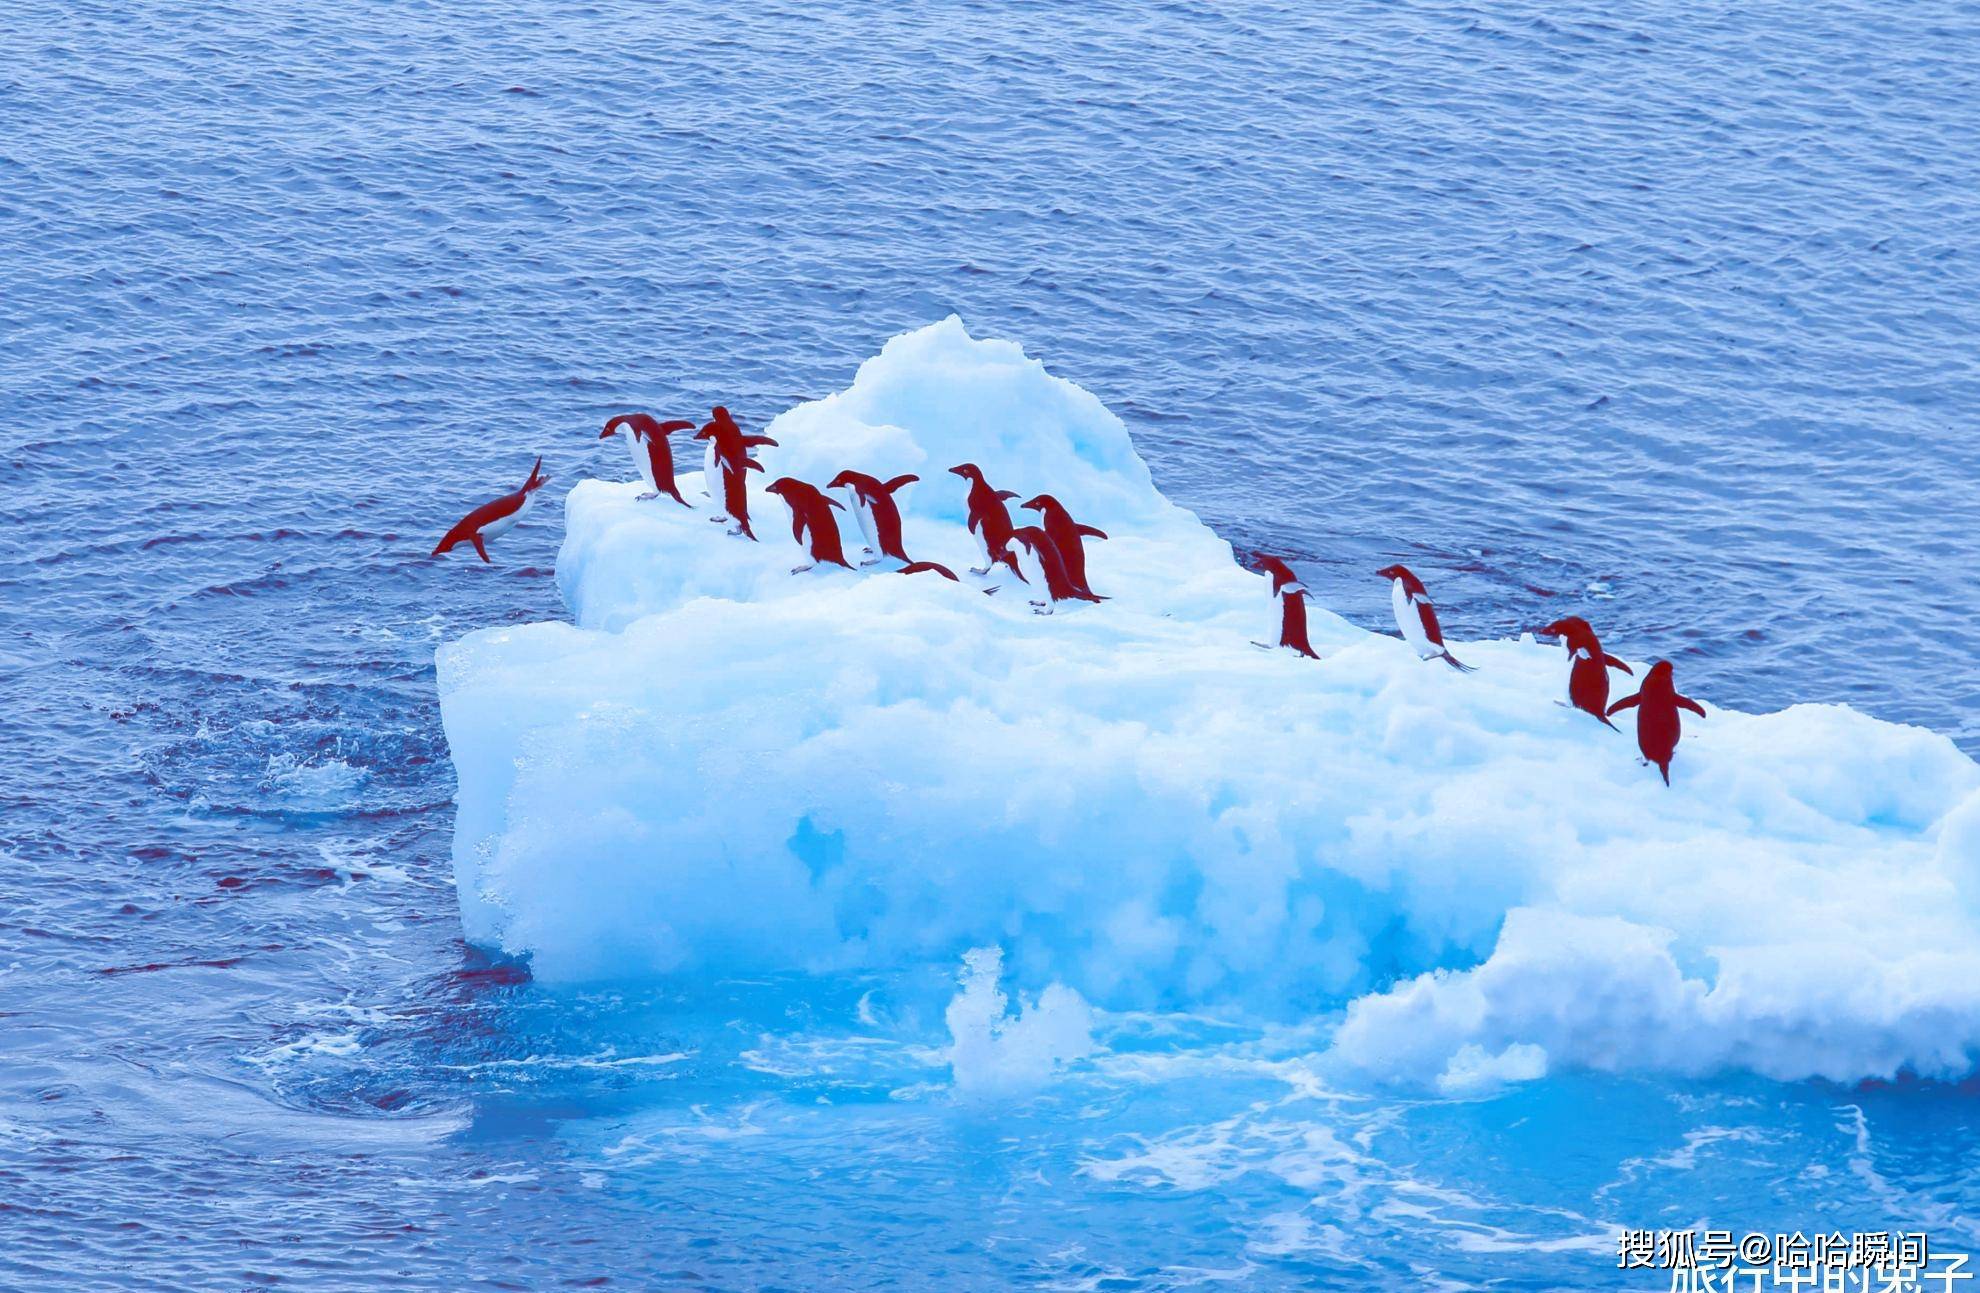 原创南极超级冰山a68即将挣脱面积相当于上海或带来企鹅灭绝